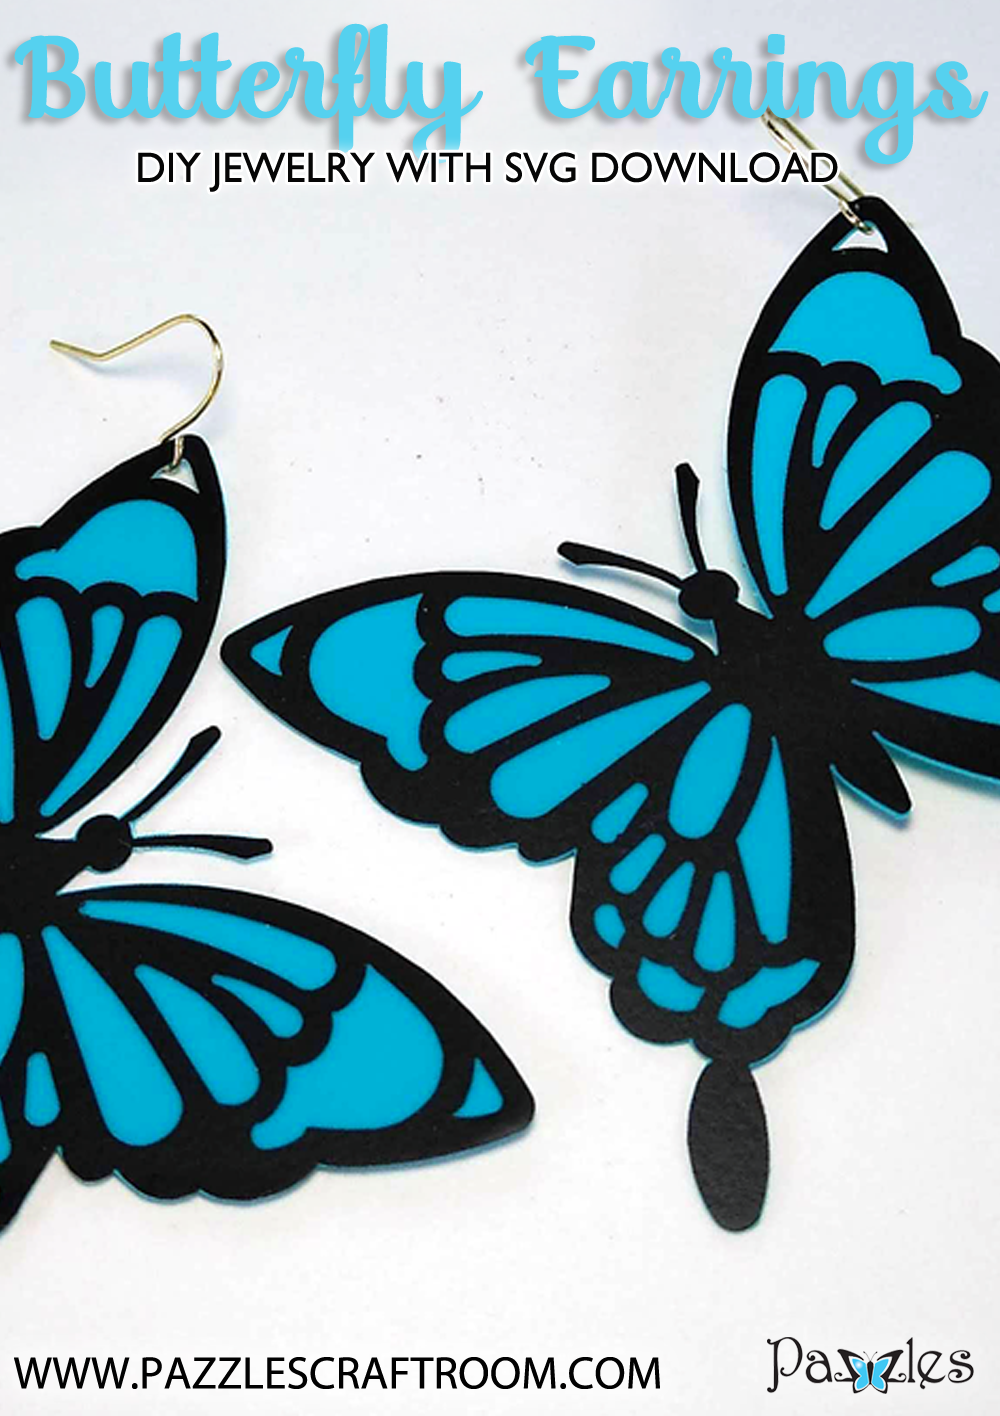 Làm trang sức bướm DIY: Nếu bạn yêu thích làm đồ handmade, thì hình ảnh này nhất định sẽ khiến bạn thích thú. Học cách làm trang sức bướm DIY với công thức đơn giản và dụng cụ cơ bản. Bạn có thể tạo ra những chiếc trang sức bướm đẹp mắt và độc đáo cho bản thân hoặc tặng người thân yêu. Hãy cùng xem hình ảnh để bắt đầu!